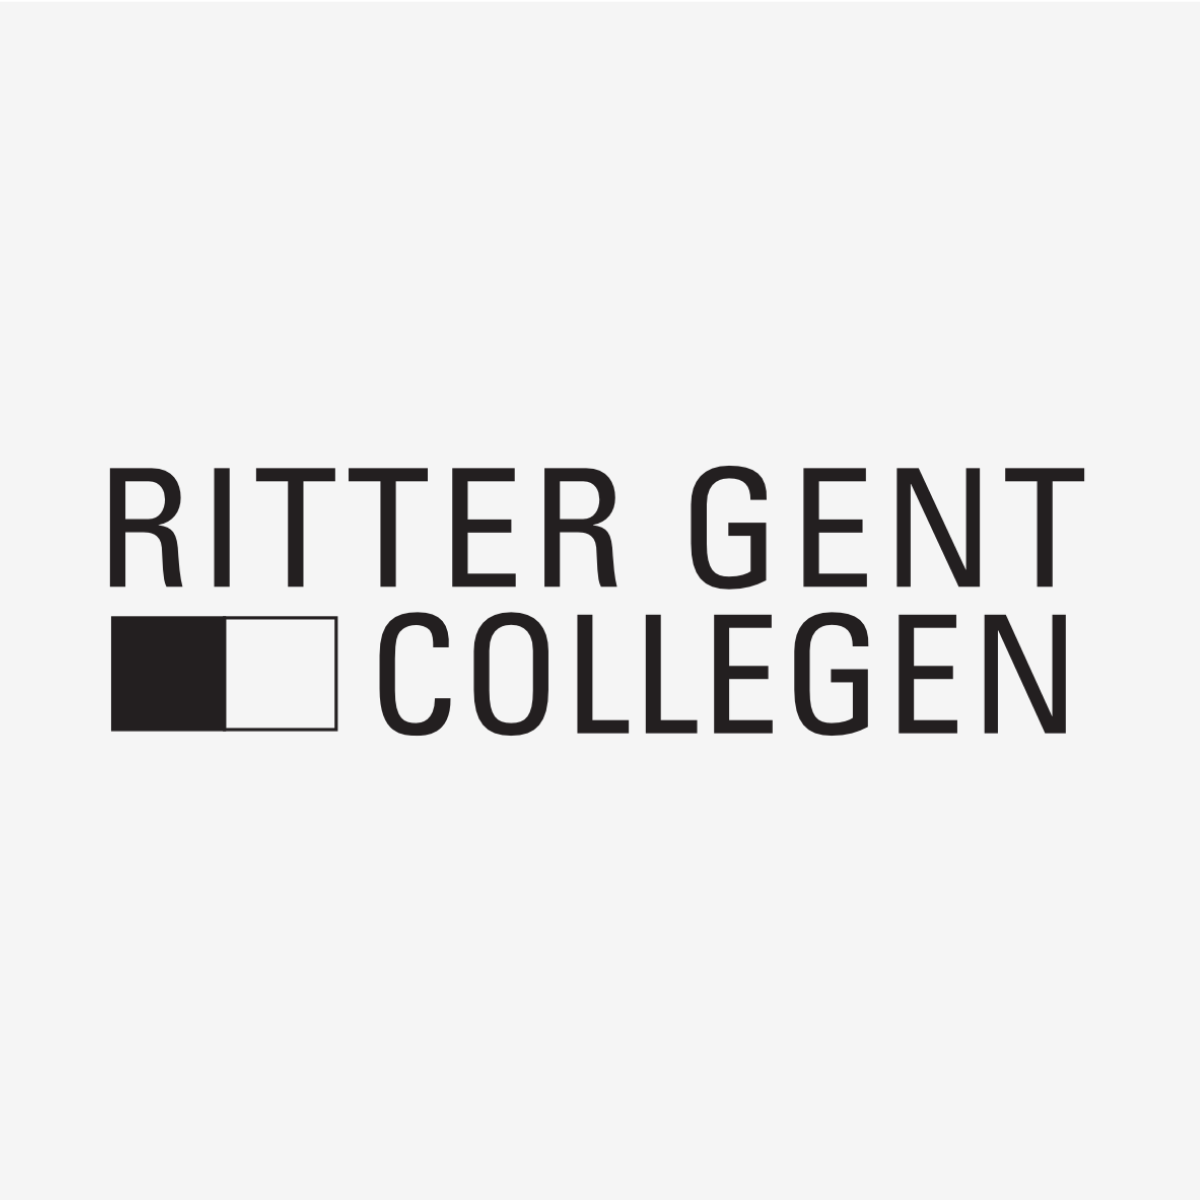 Ritter Gent Collegen